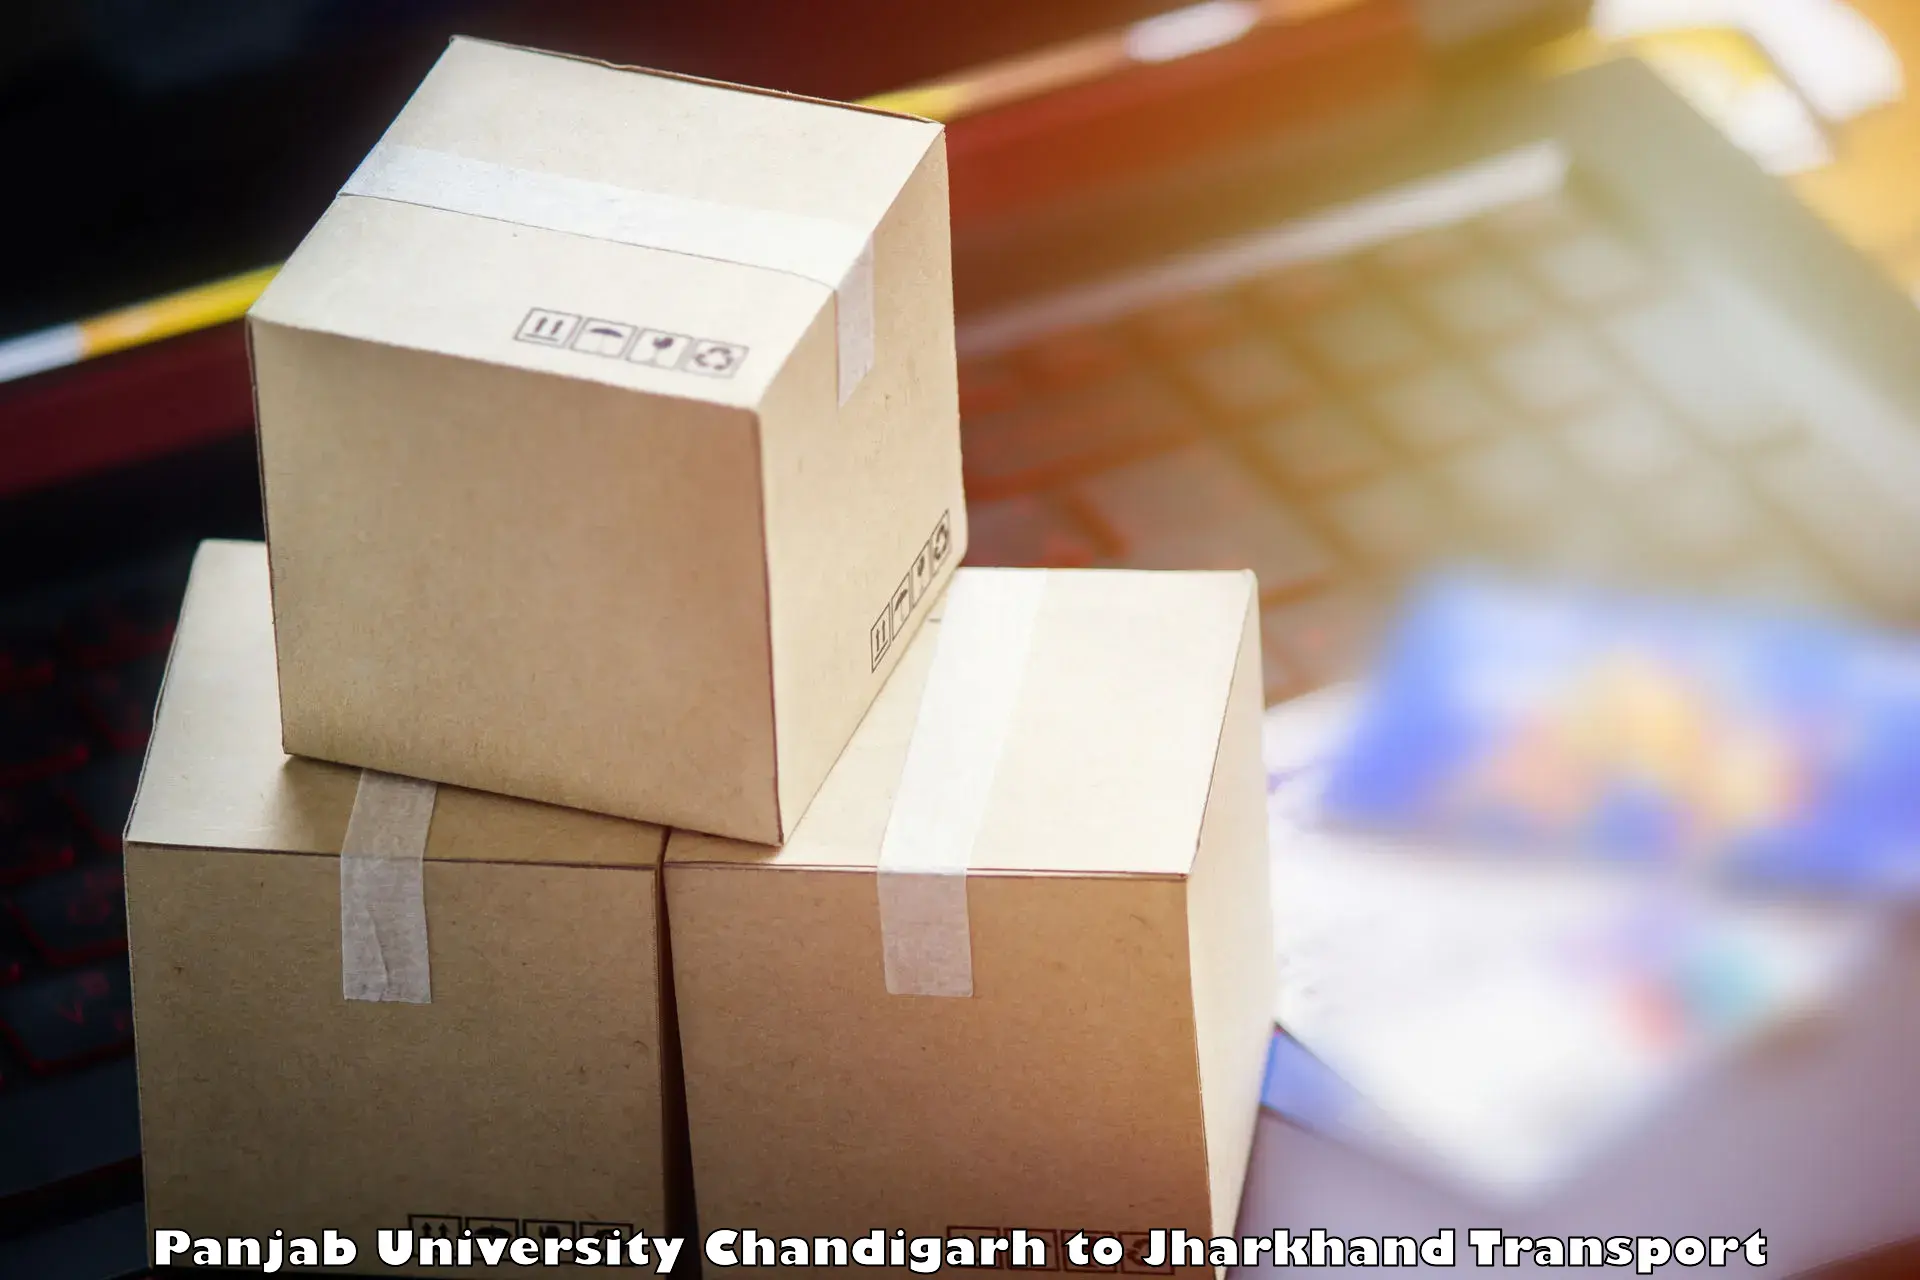 Shipping partner Panjab University Chandigarh to Chakradharpur